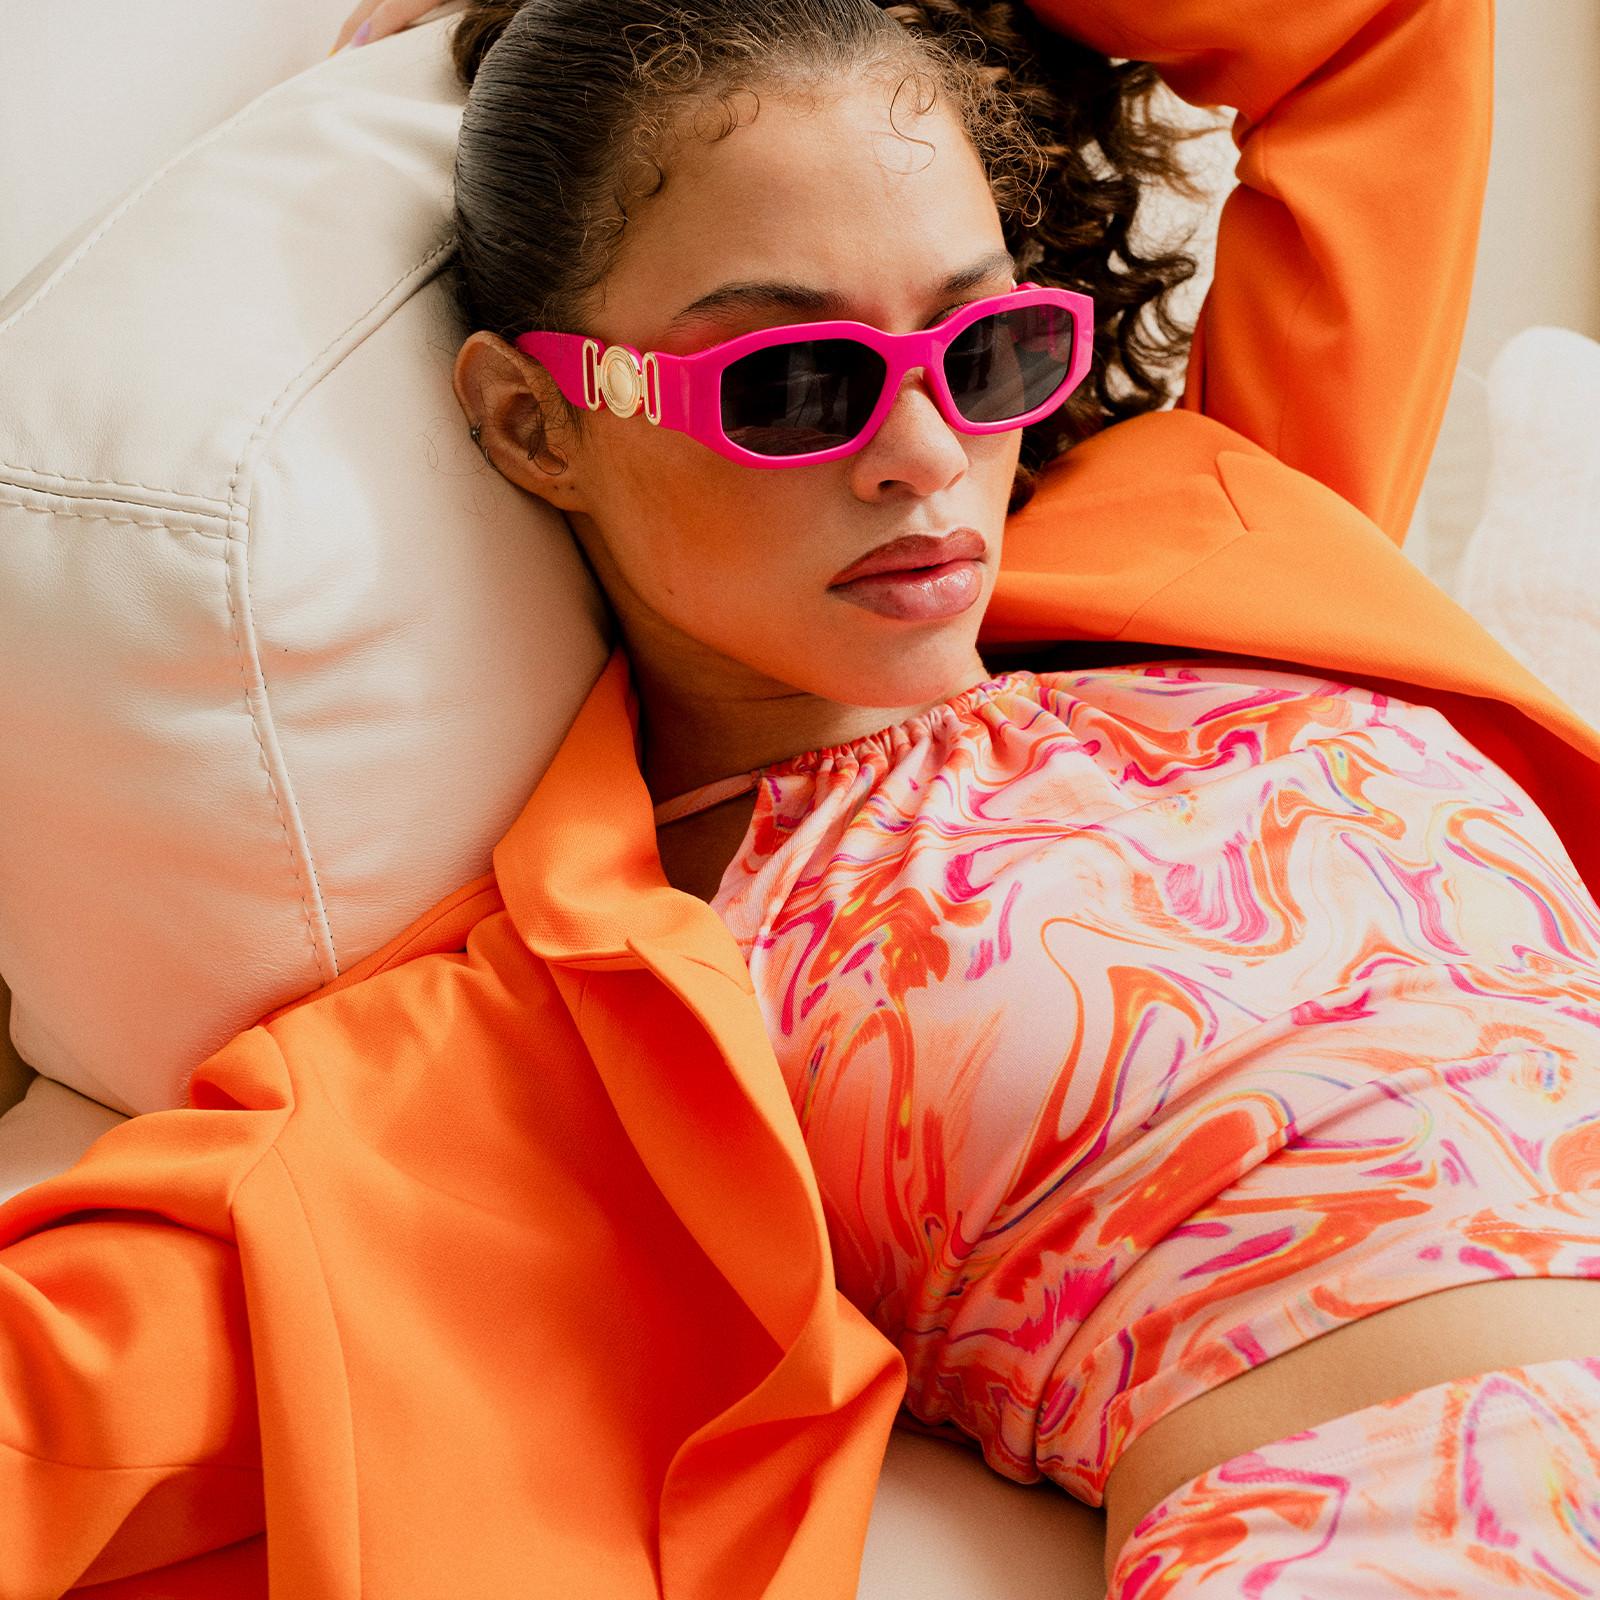 La modella indossa un abito rosa e arancione con stampa a vortici e una camicia arancione.